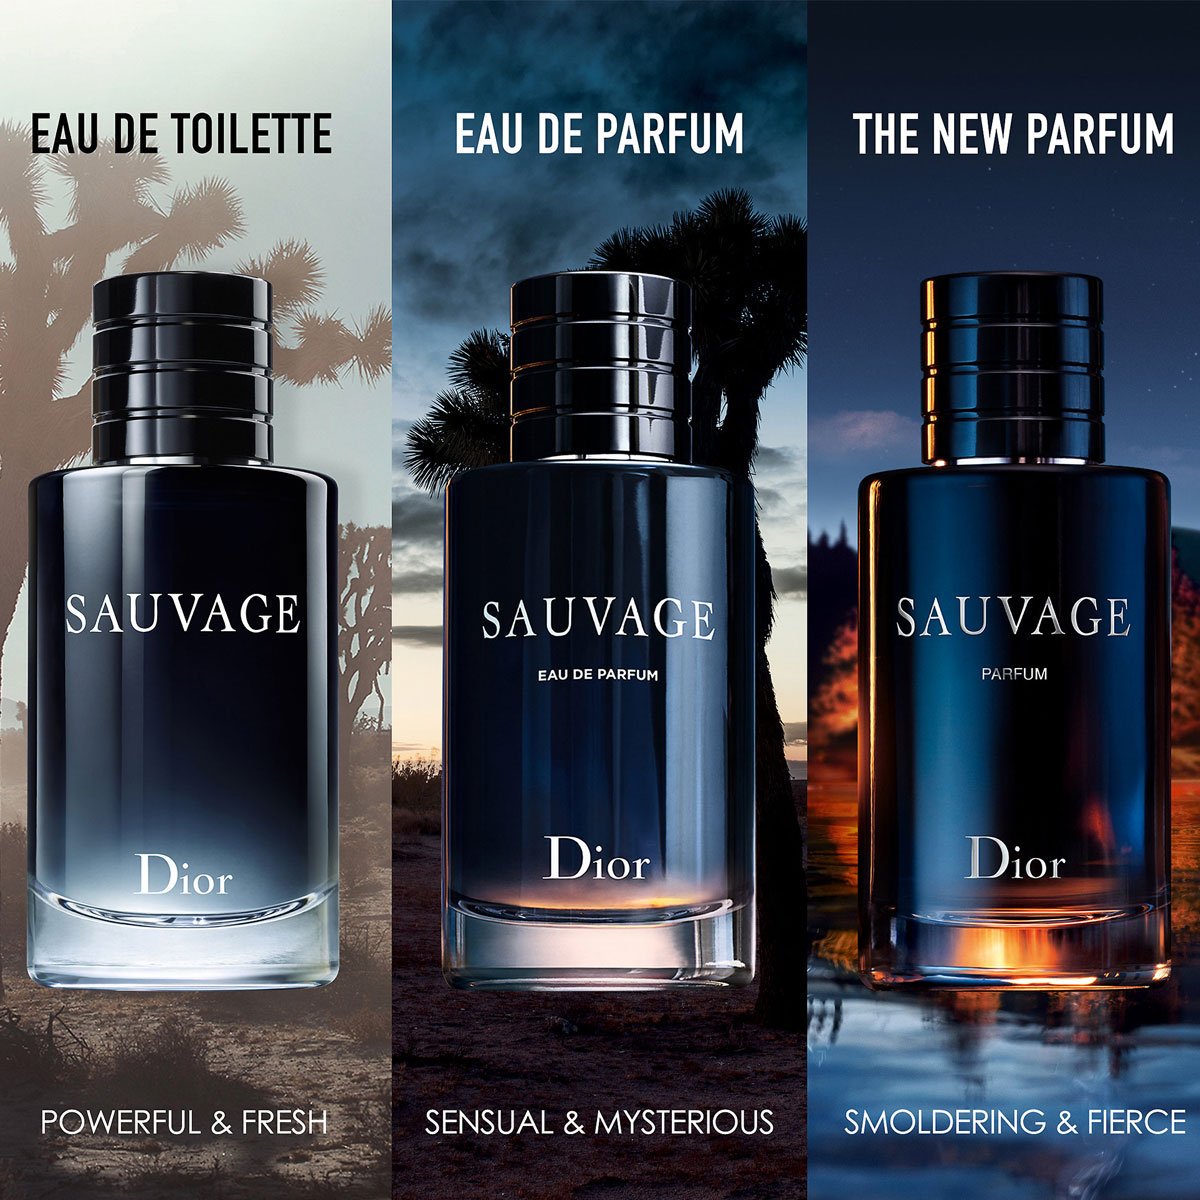 Review Nước hoa Dior Sauvage Parfum 2019 chính hãng